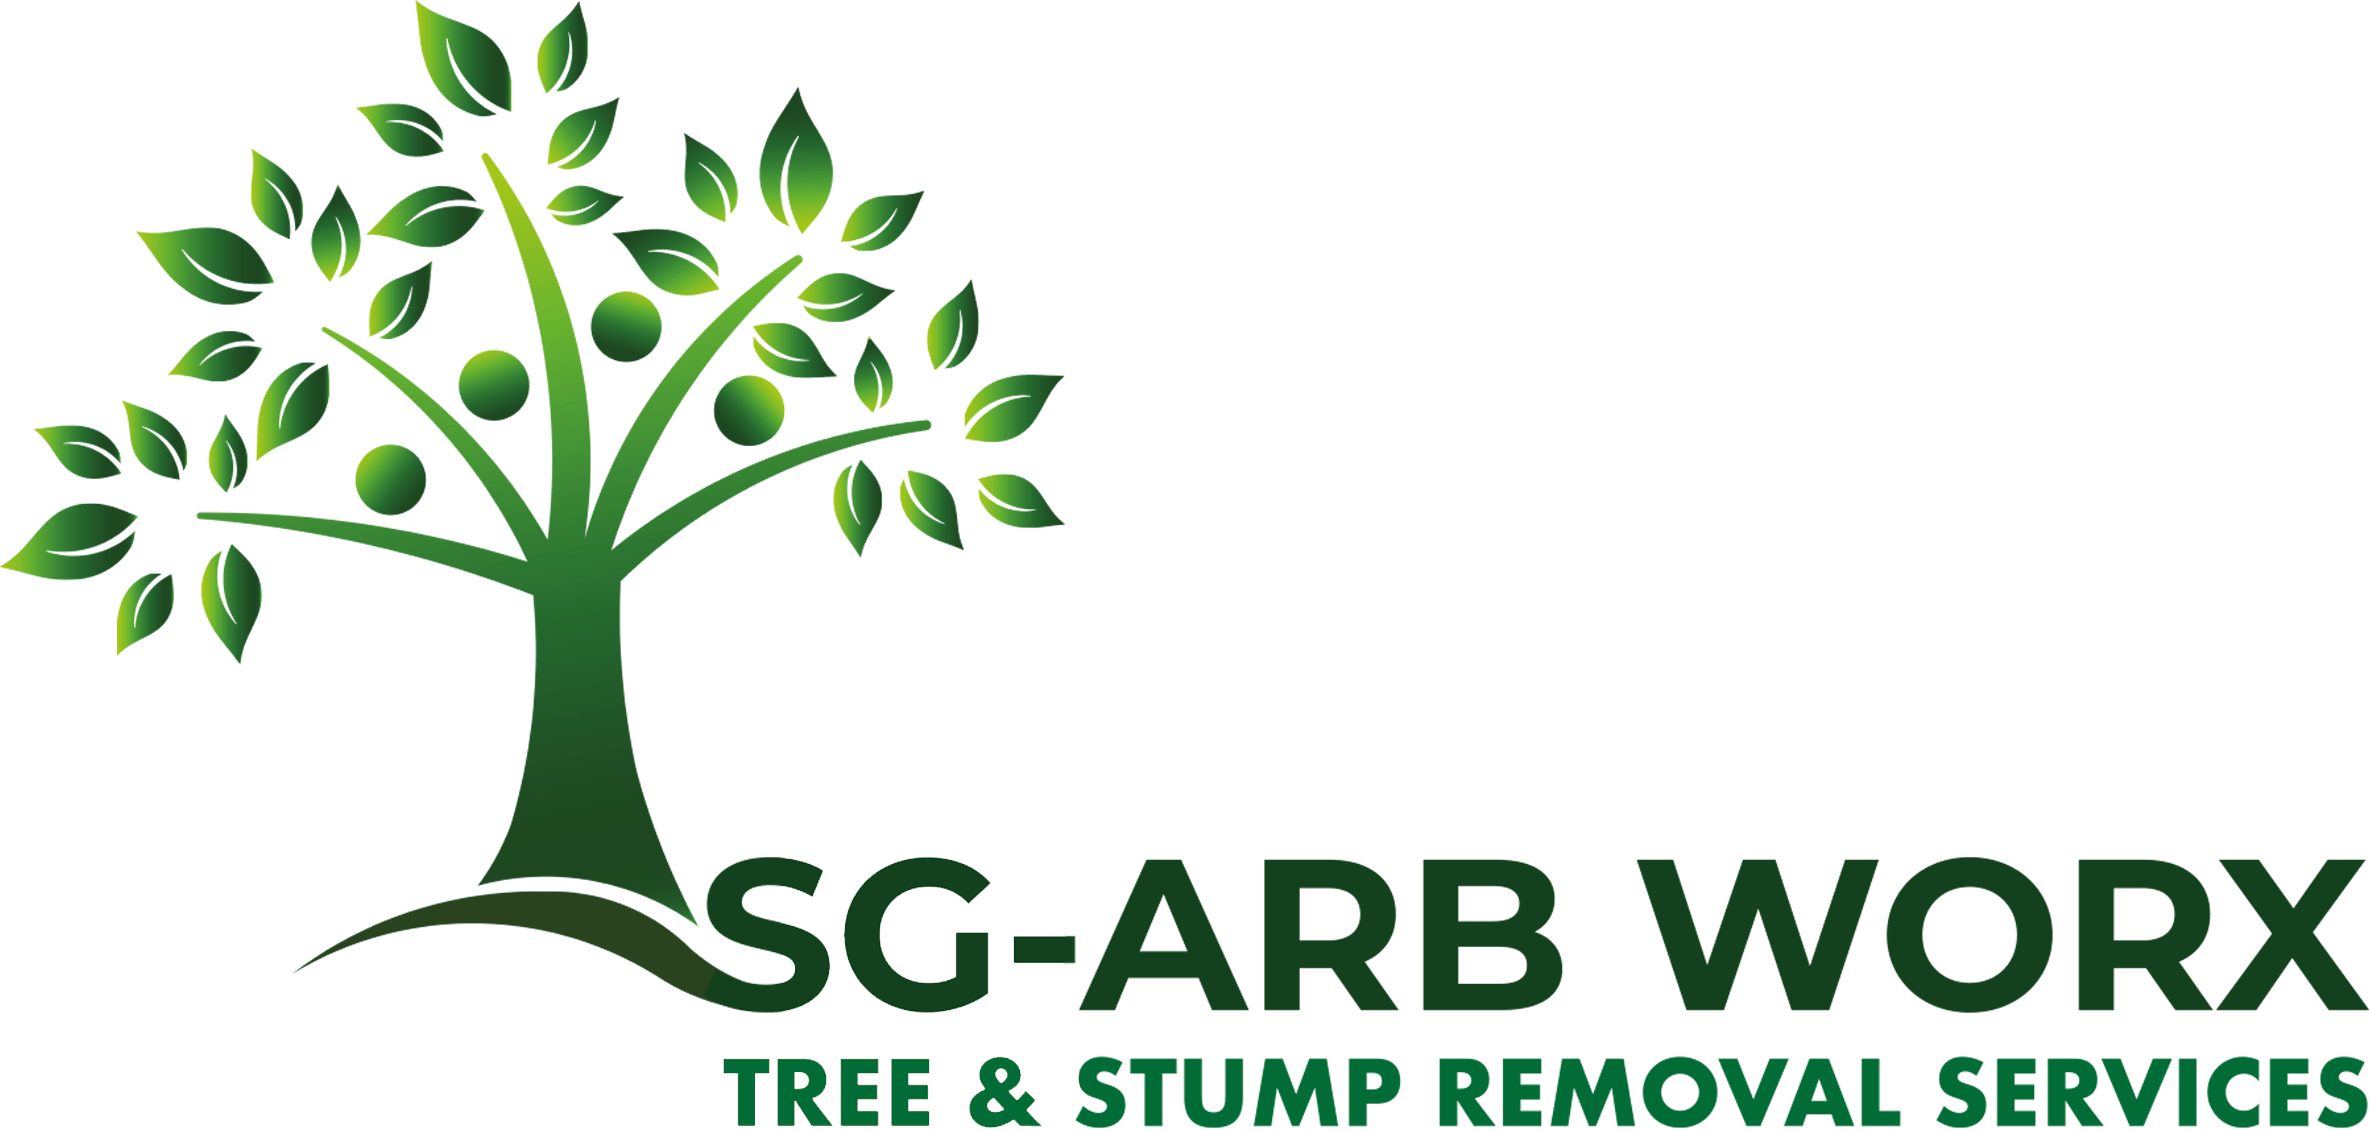 sg arb worx logo design